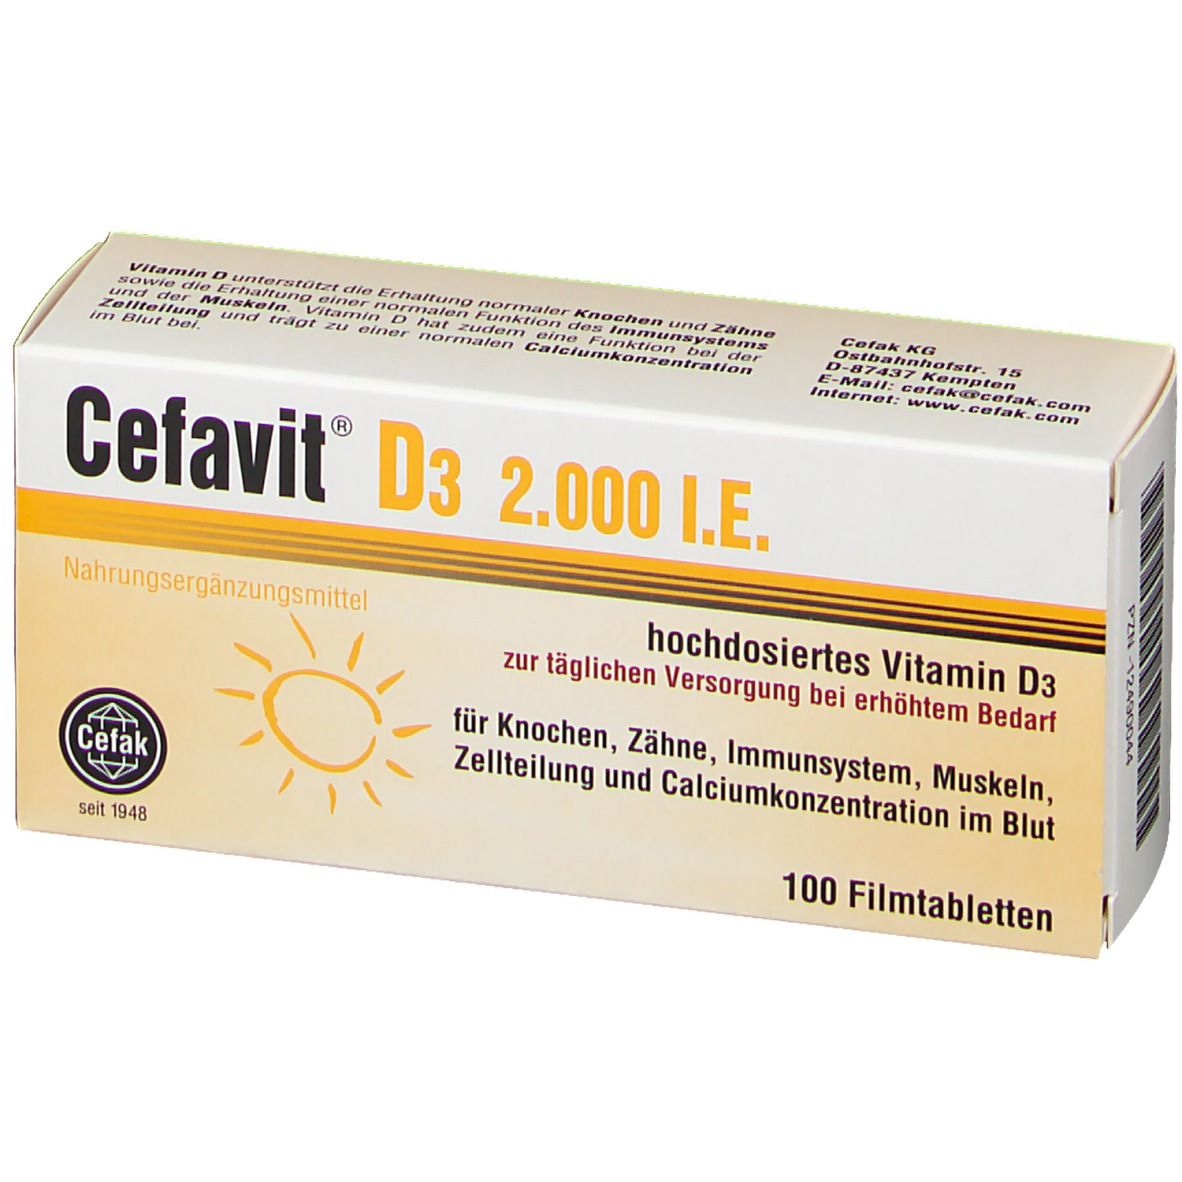 Cefavit® D3 2.000 I.E.